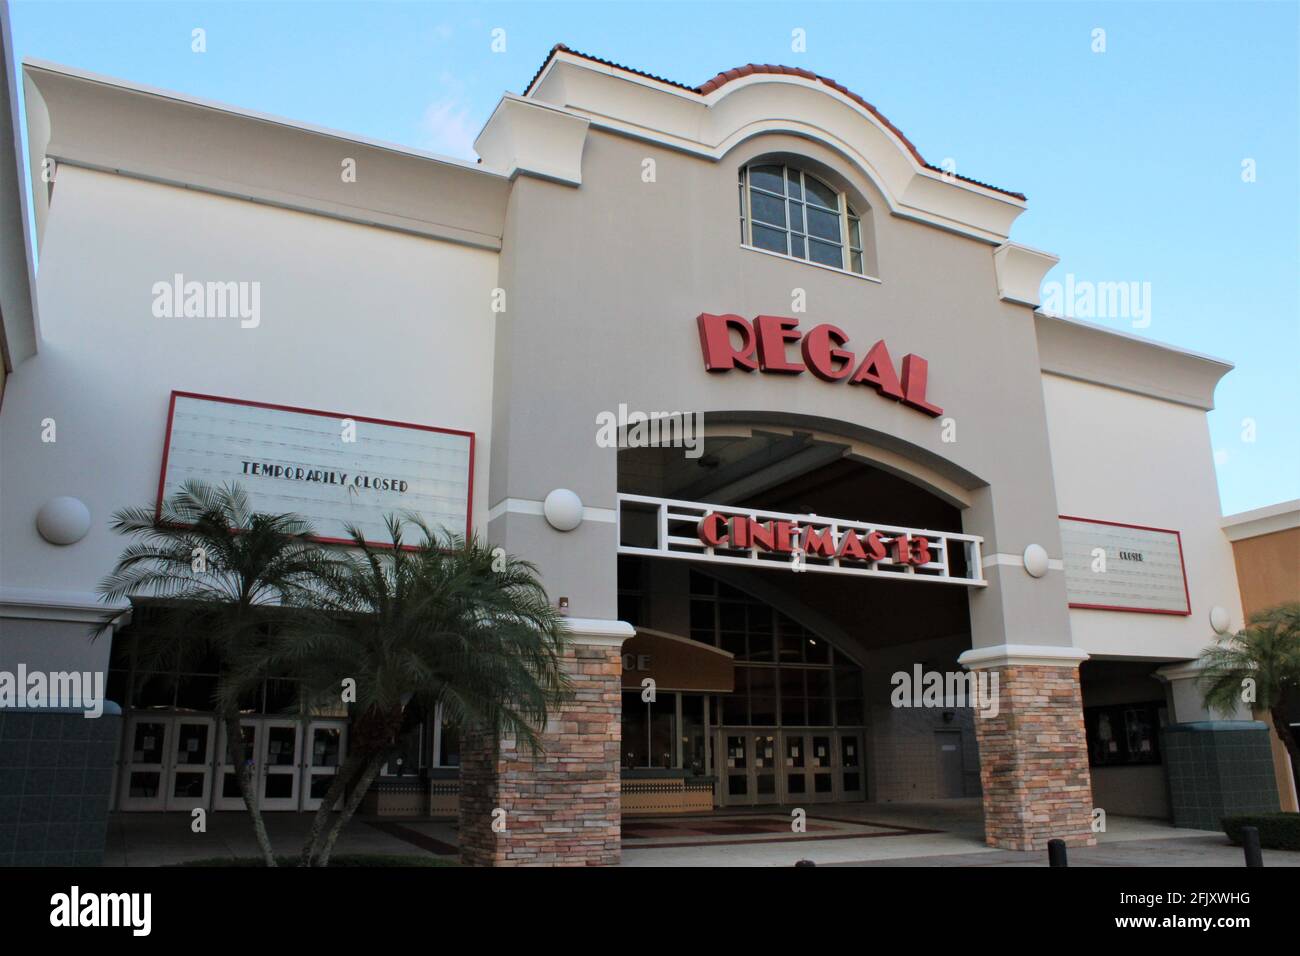 I Regal Cinemas nel sud della Florida. Temporaneamente chiuso a causa del virus covid-19. Regal offre la migliore esperienza cinematografica in 2D, 3D e IMAX digitali. Foto Stock